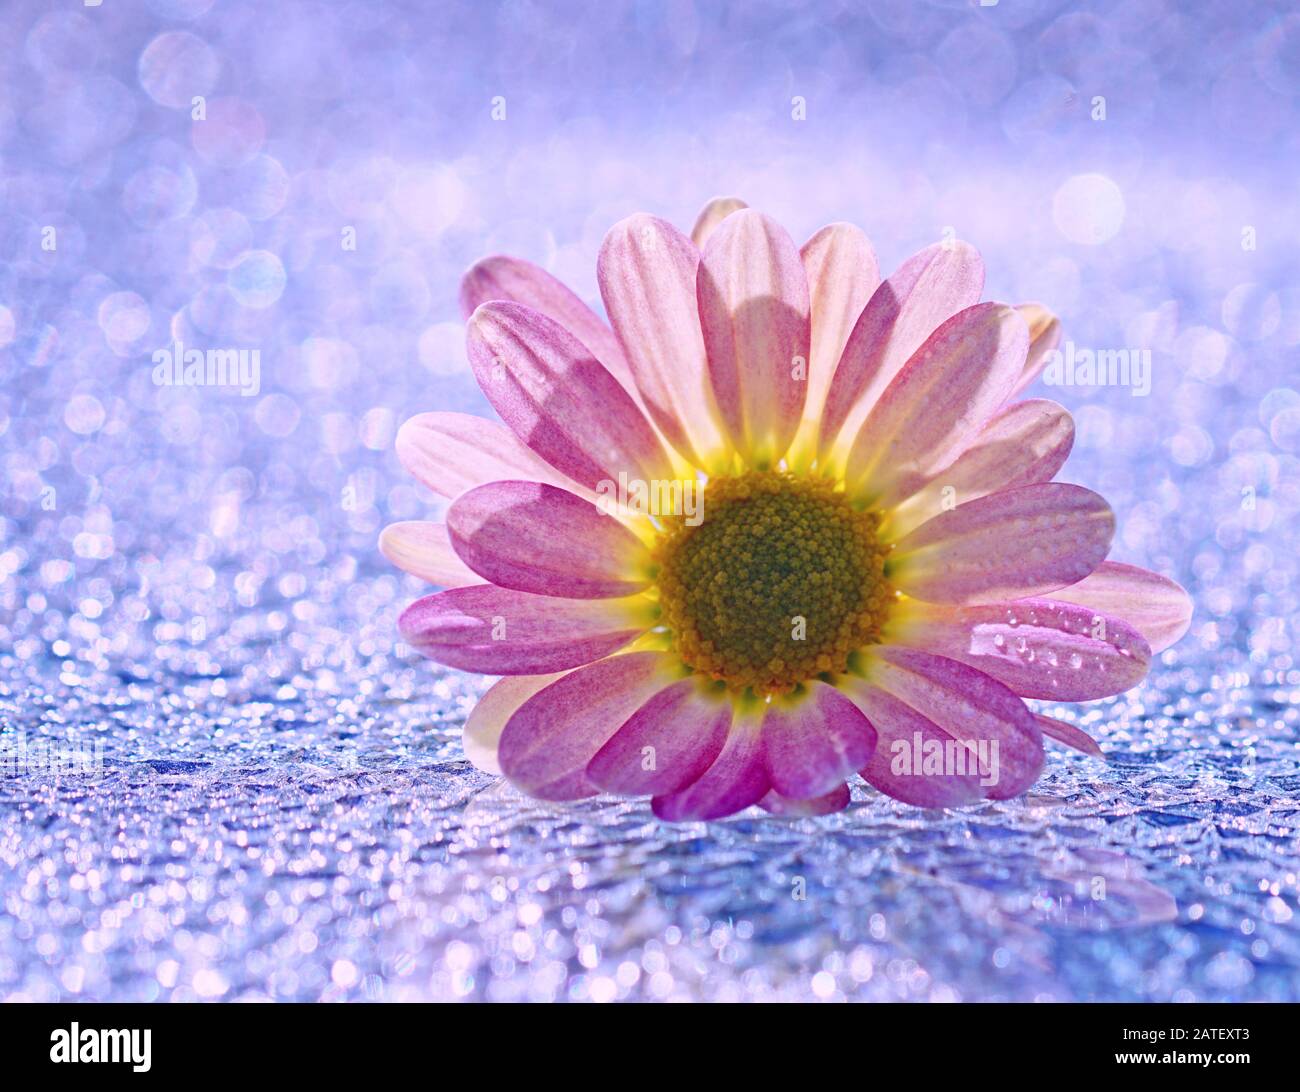 Primo piano di un crisantemo rosa luminoso su uno sfondo blu e argento scintillante Foto Stock